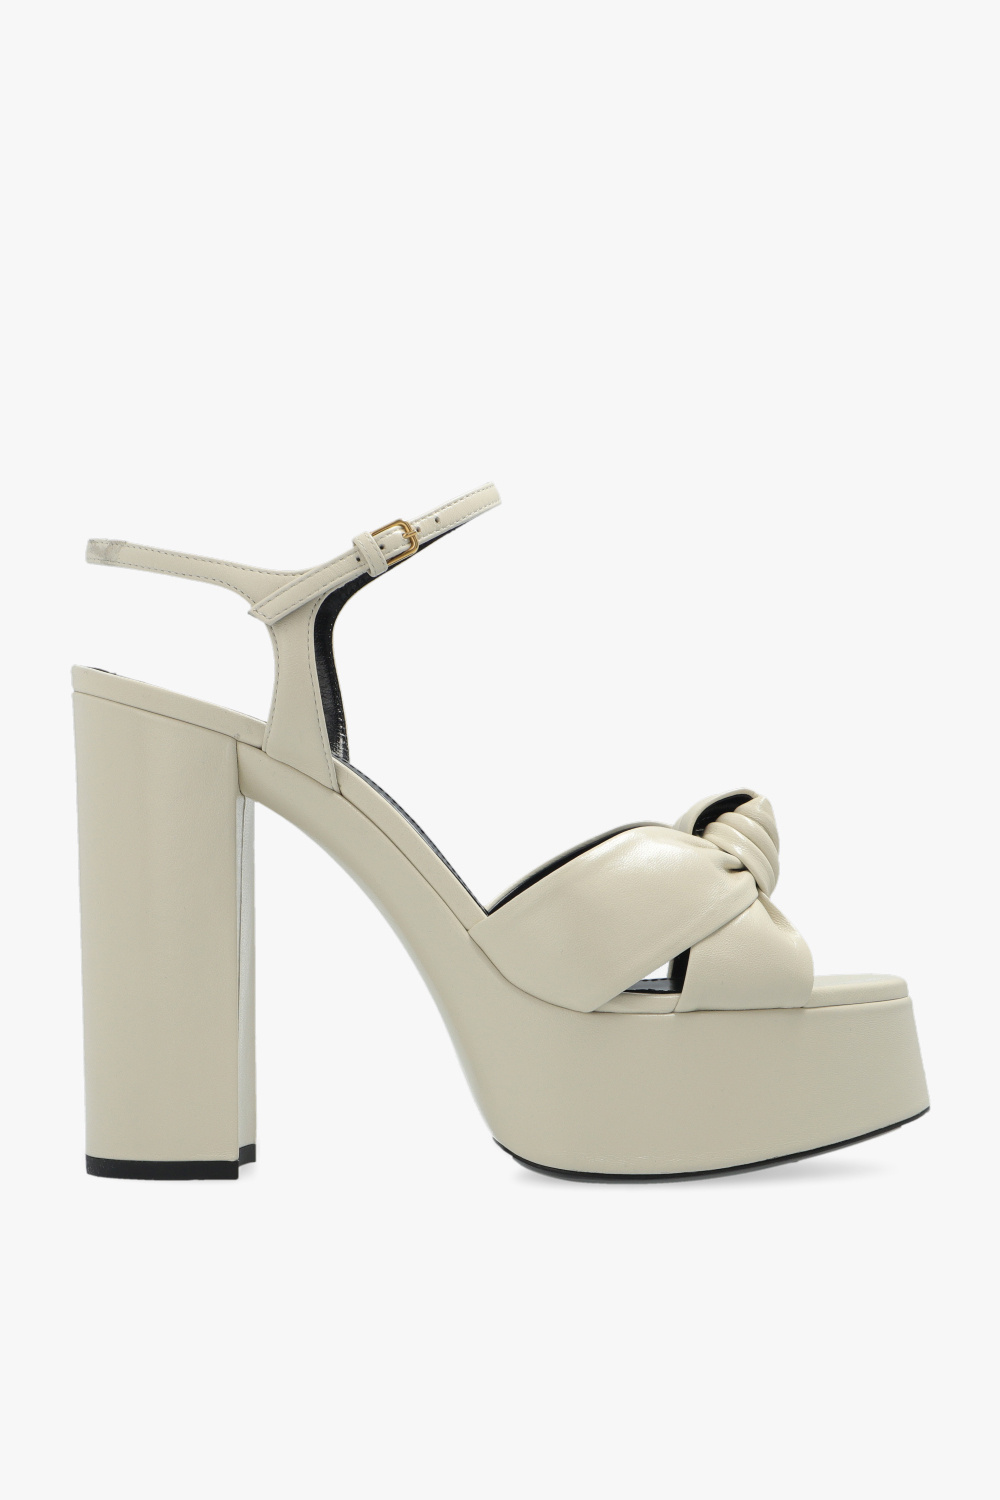 Saint Laurent ‘Bianca’ jumpsuit sandals